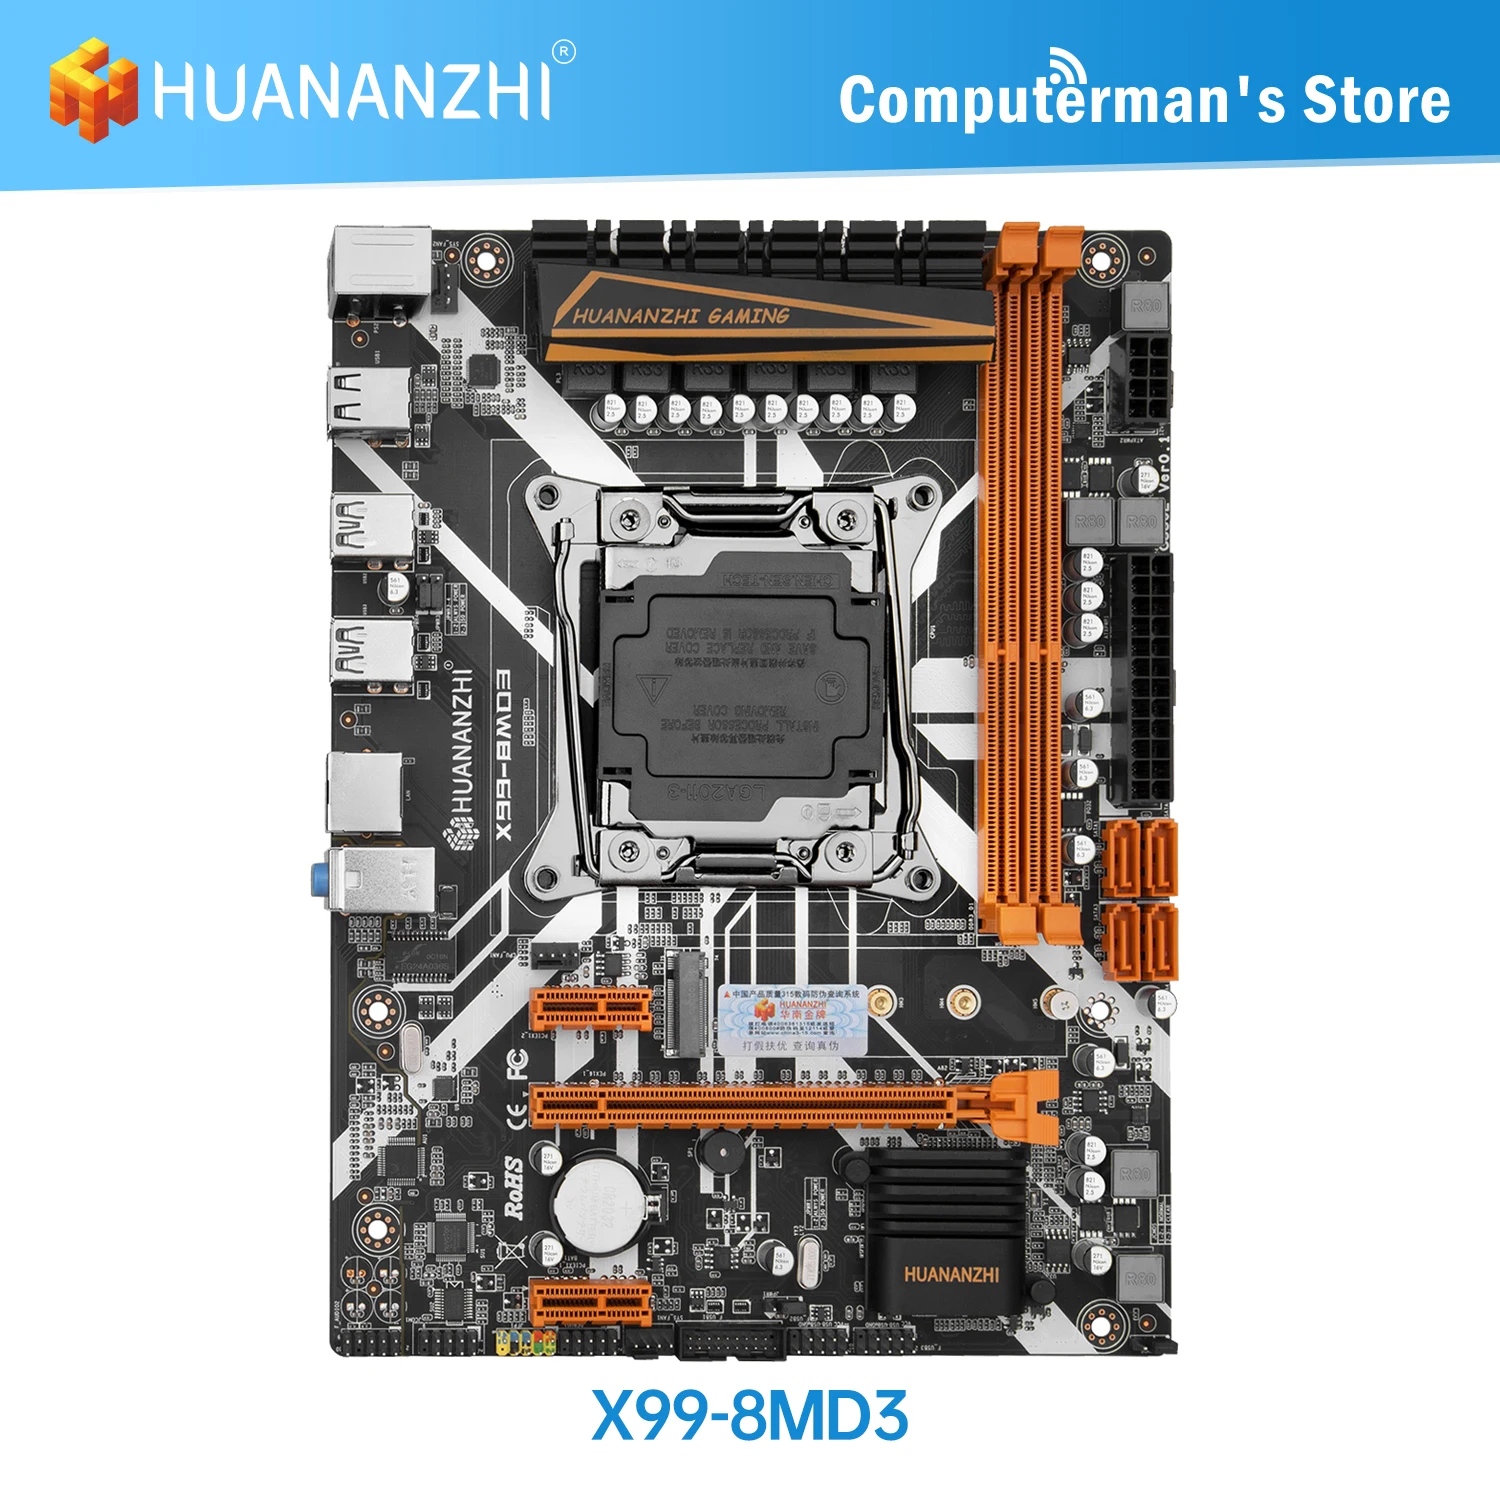 HUANANZHI-placa base X99 8M D3 X99, Intel XEON E5, LGA2011-3, todas las Series, DDR3, RECC, memoria de NON-ECC, NVME, USB, SATA, estación de trabajo para servidor